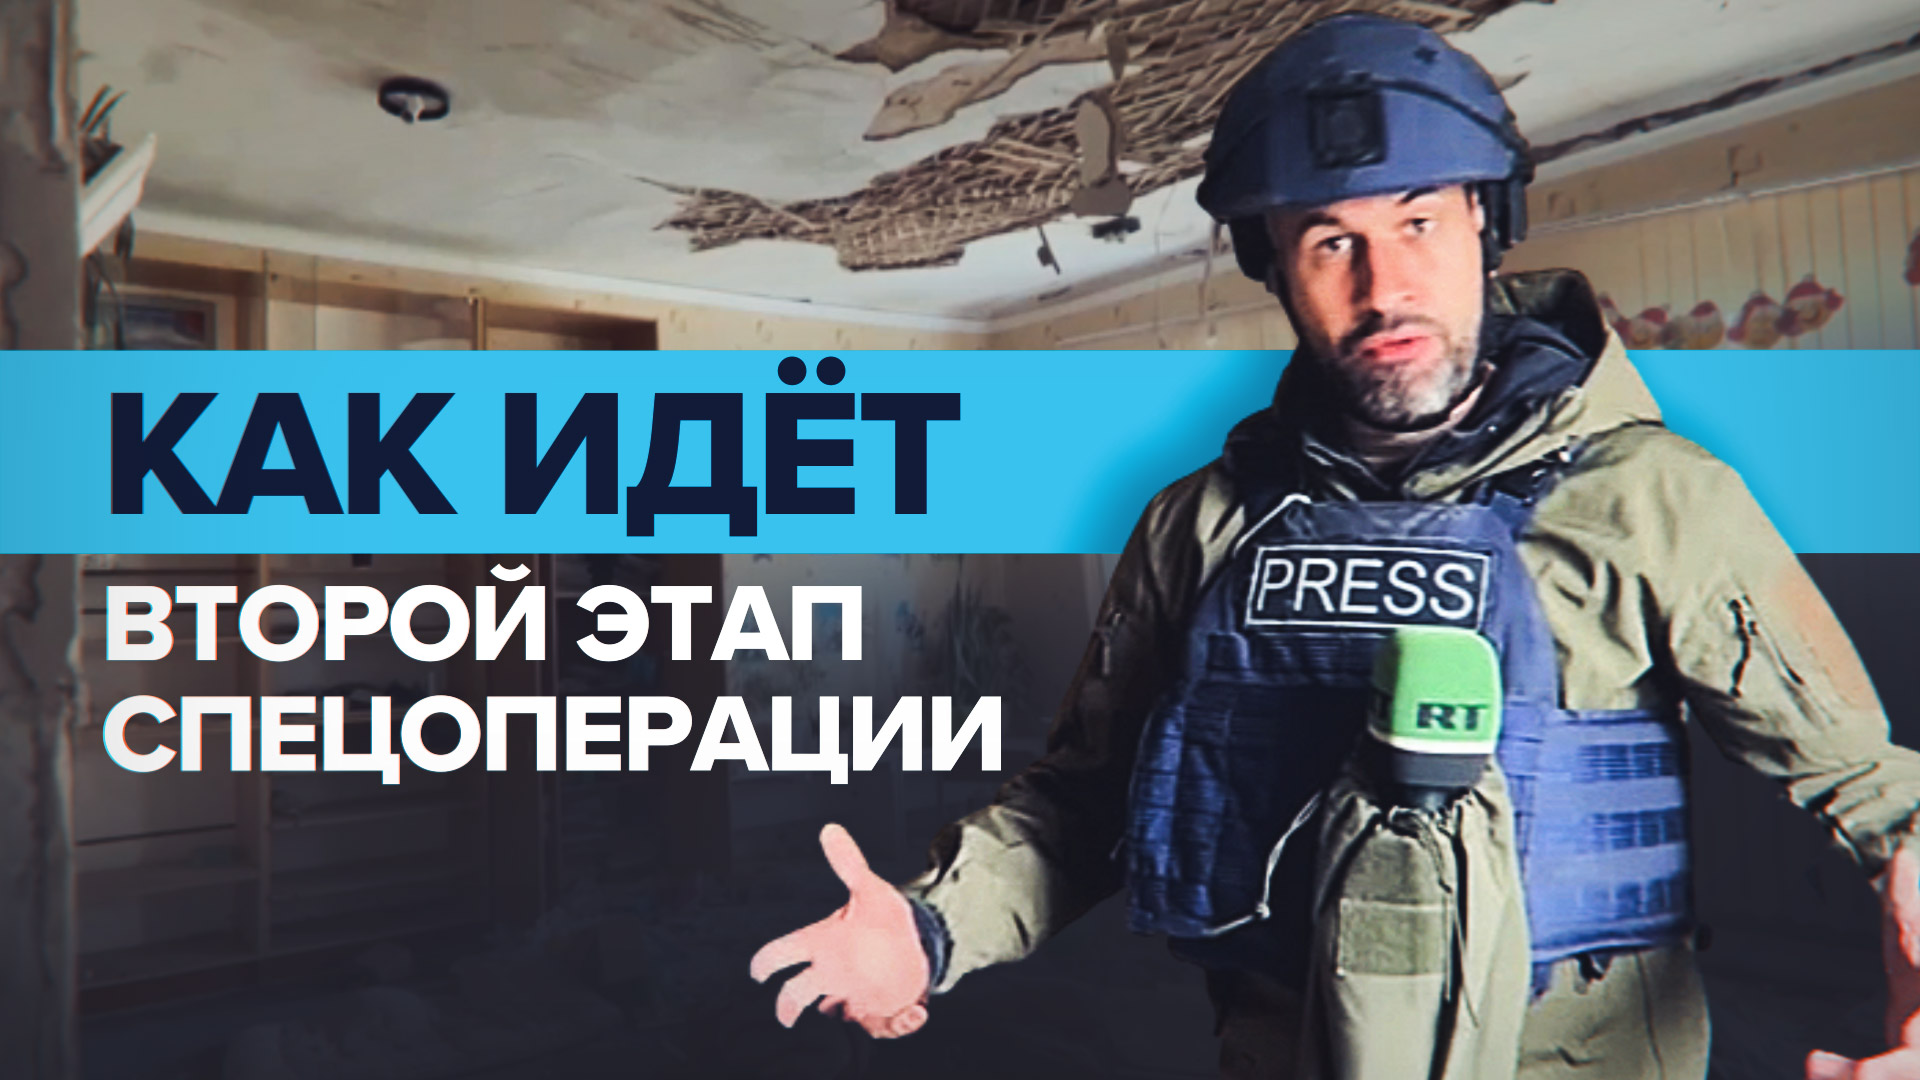 «Цель — окружить украинские силы»: корреспондент RT — о втором этапе спецоперации